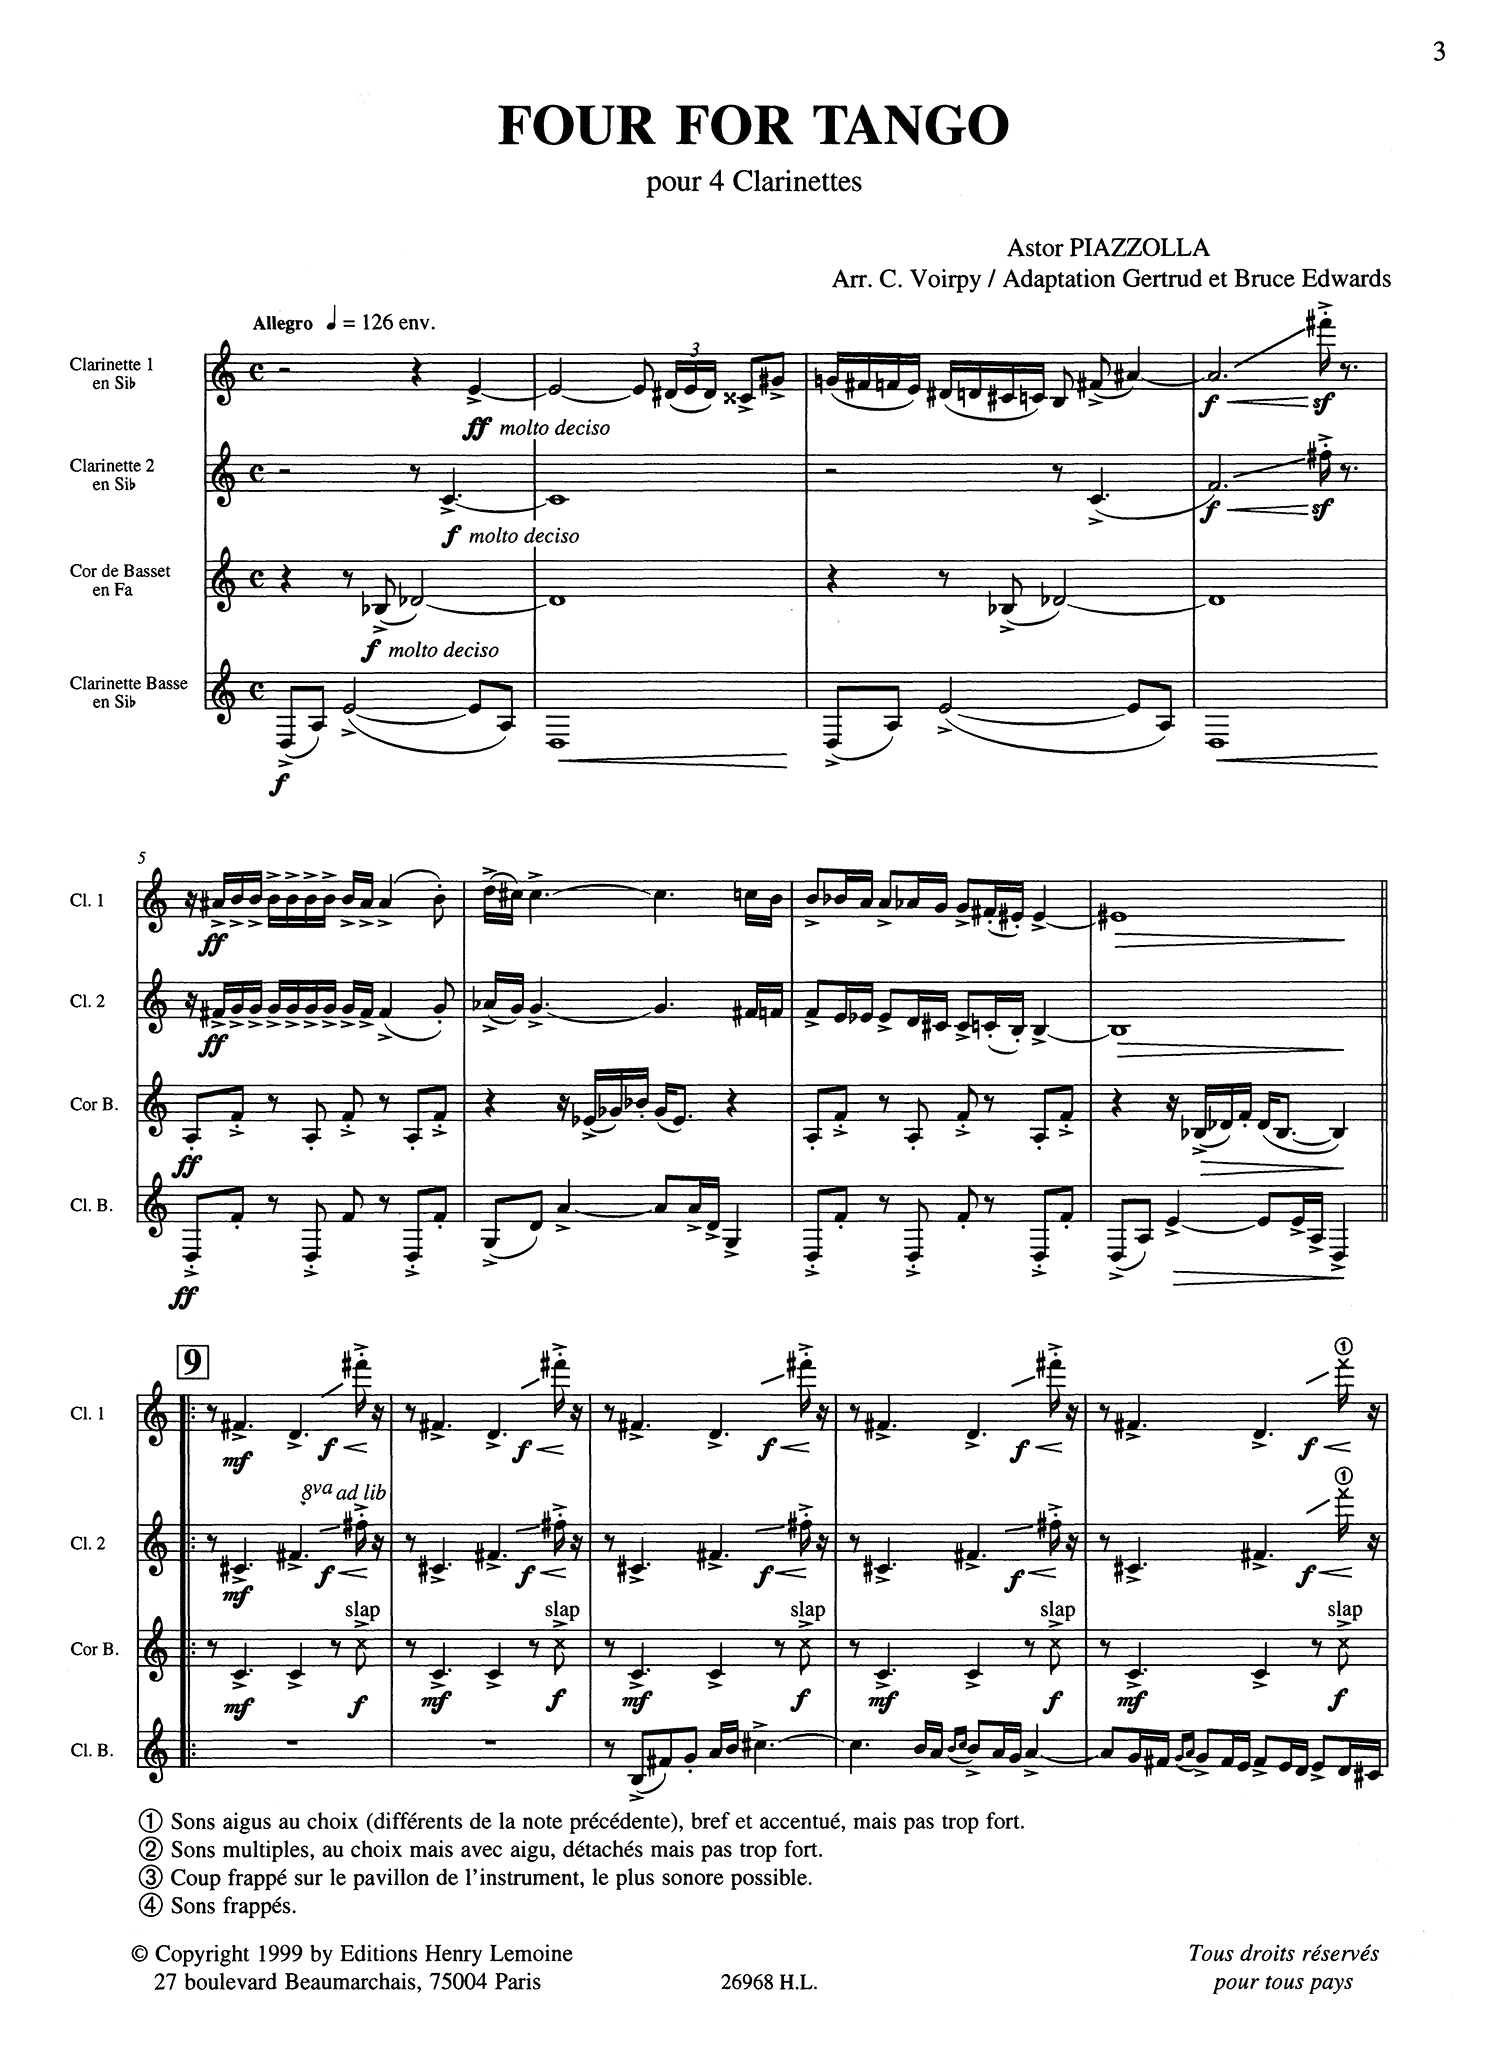 Piazzolla Four, for Tango clarinet quartet arrangement score